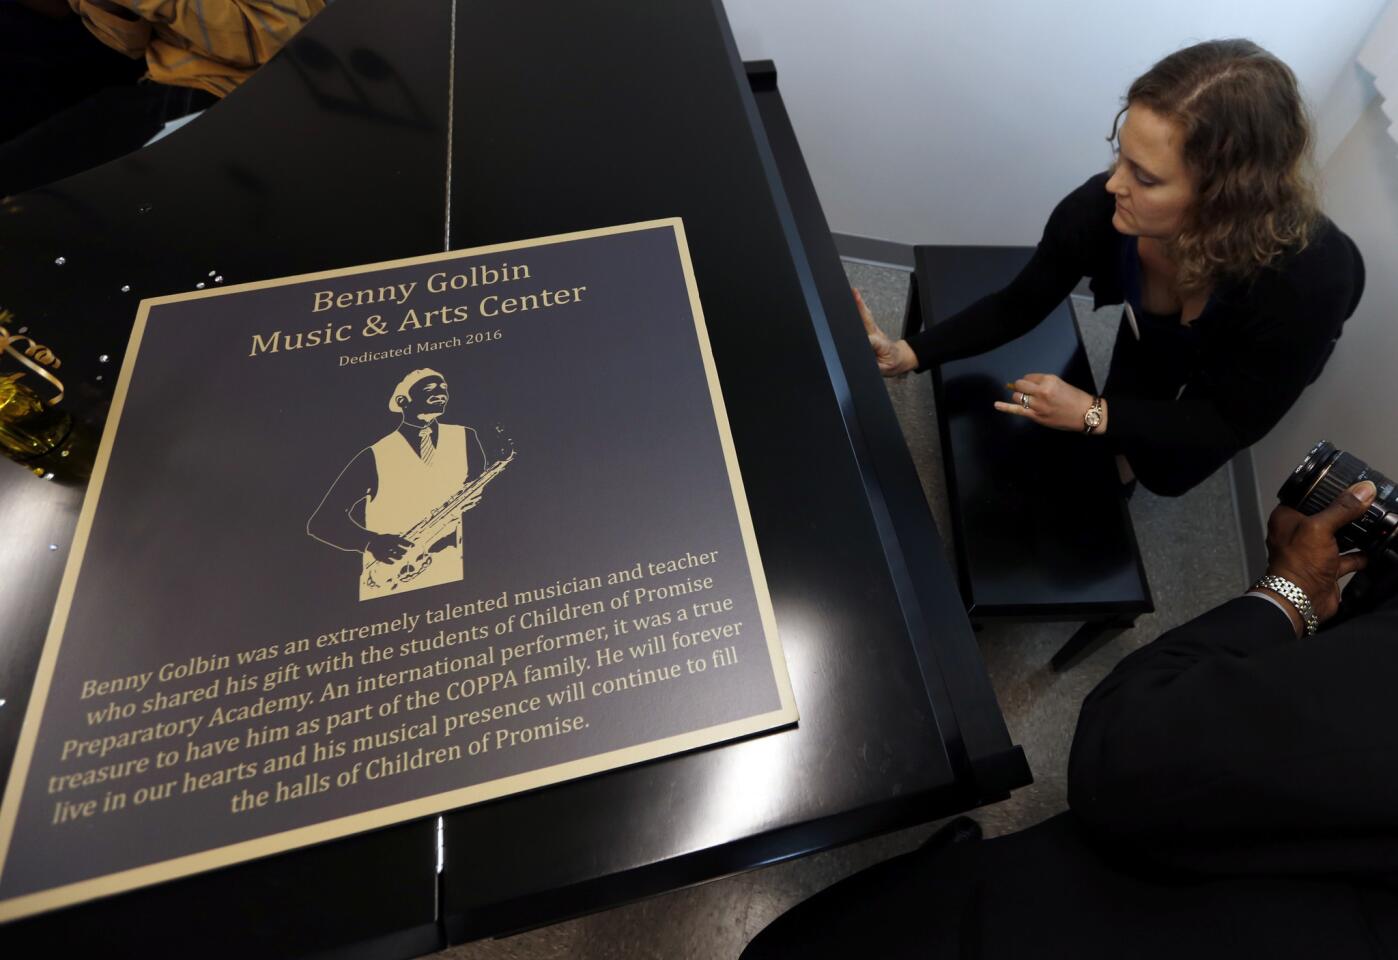 Benny Golbin Music & Arts Center dedication